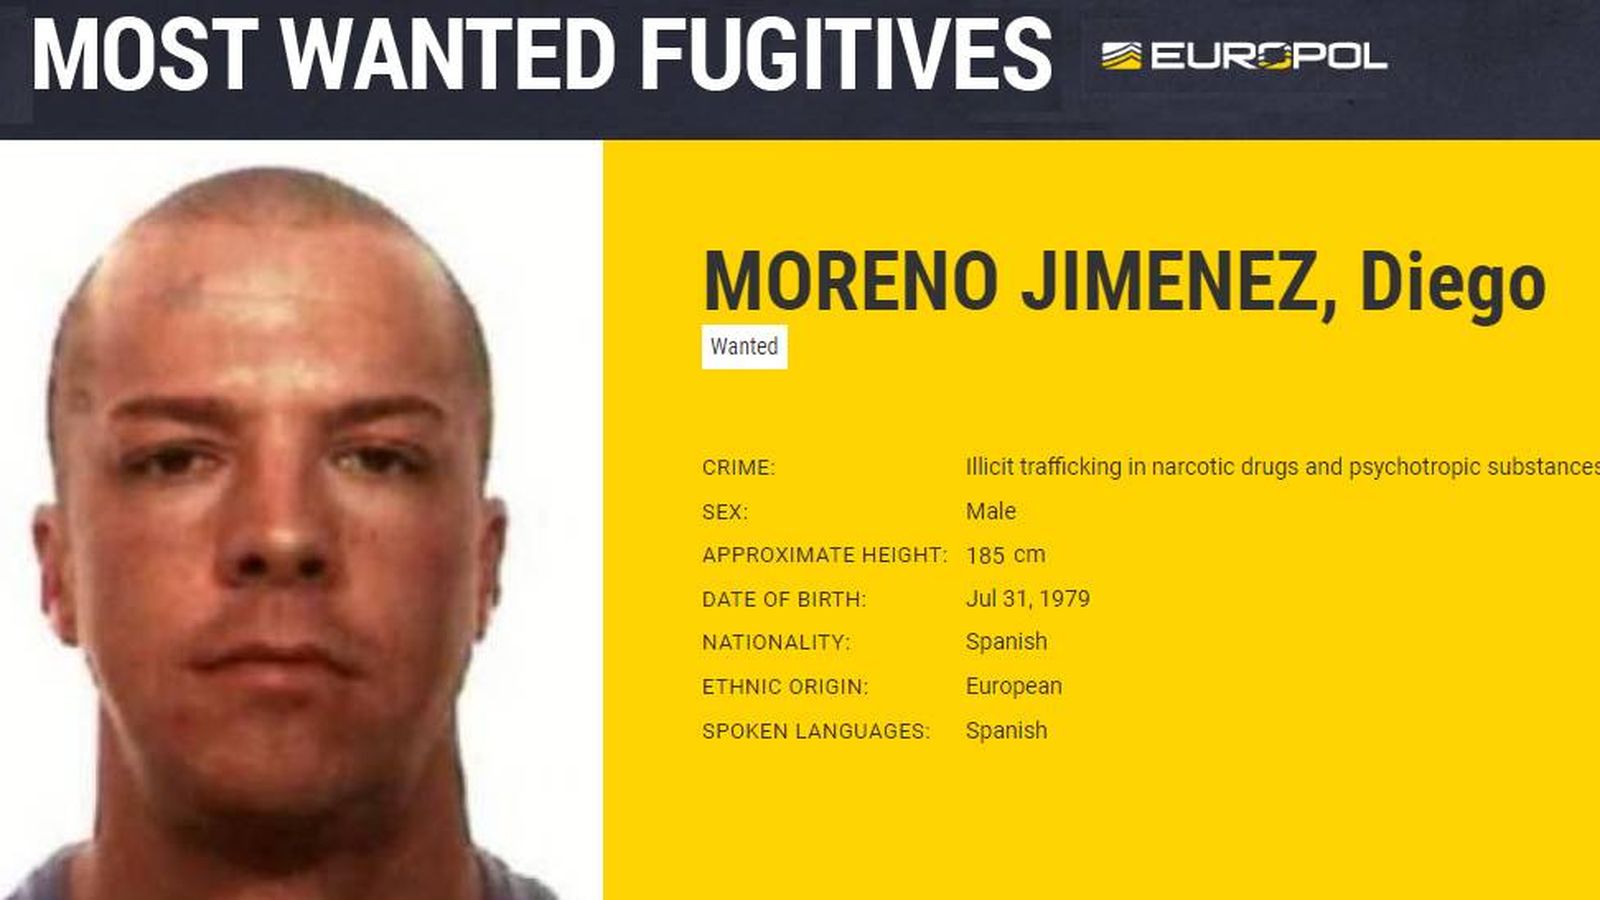 Foto: Ficha de fugitivo de Diego Moreno Jiménez. (Europol)